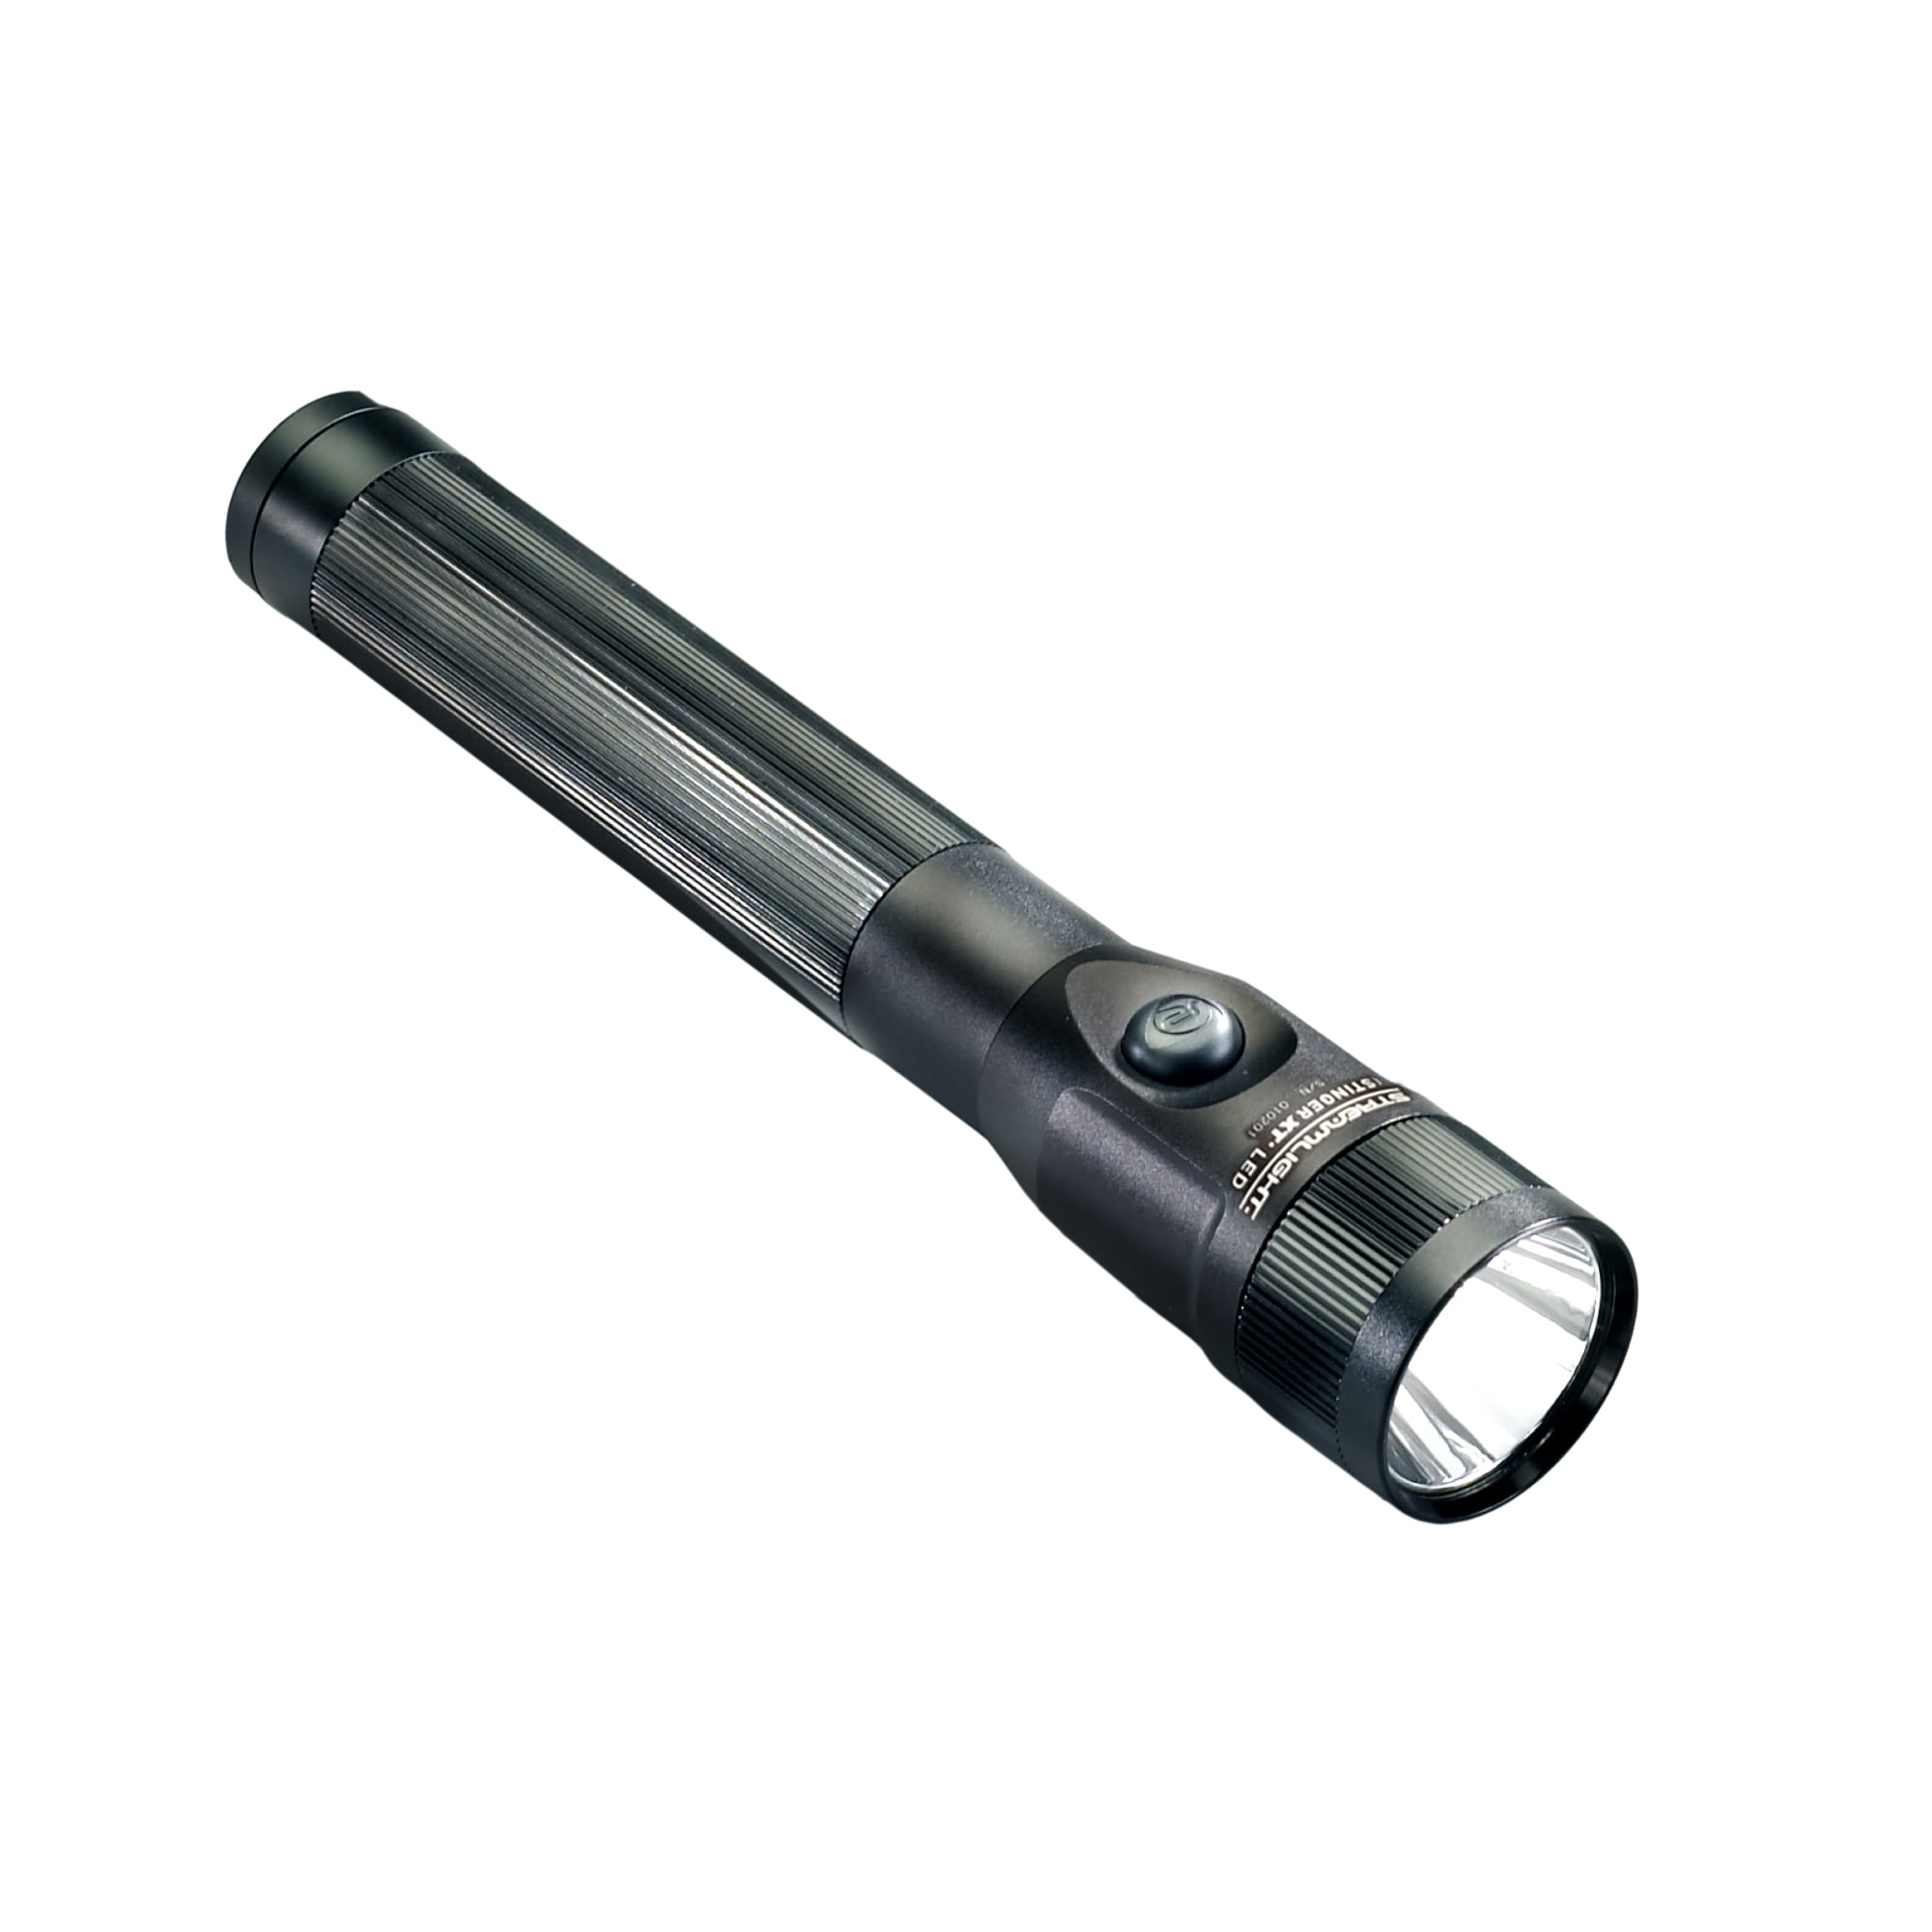 Streamlight 75648 Stinger LED Rechargeable Flashlight Kit for sale online 